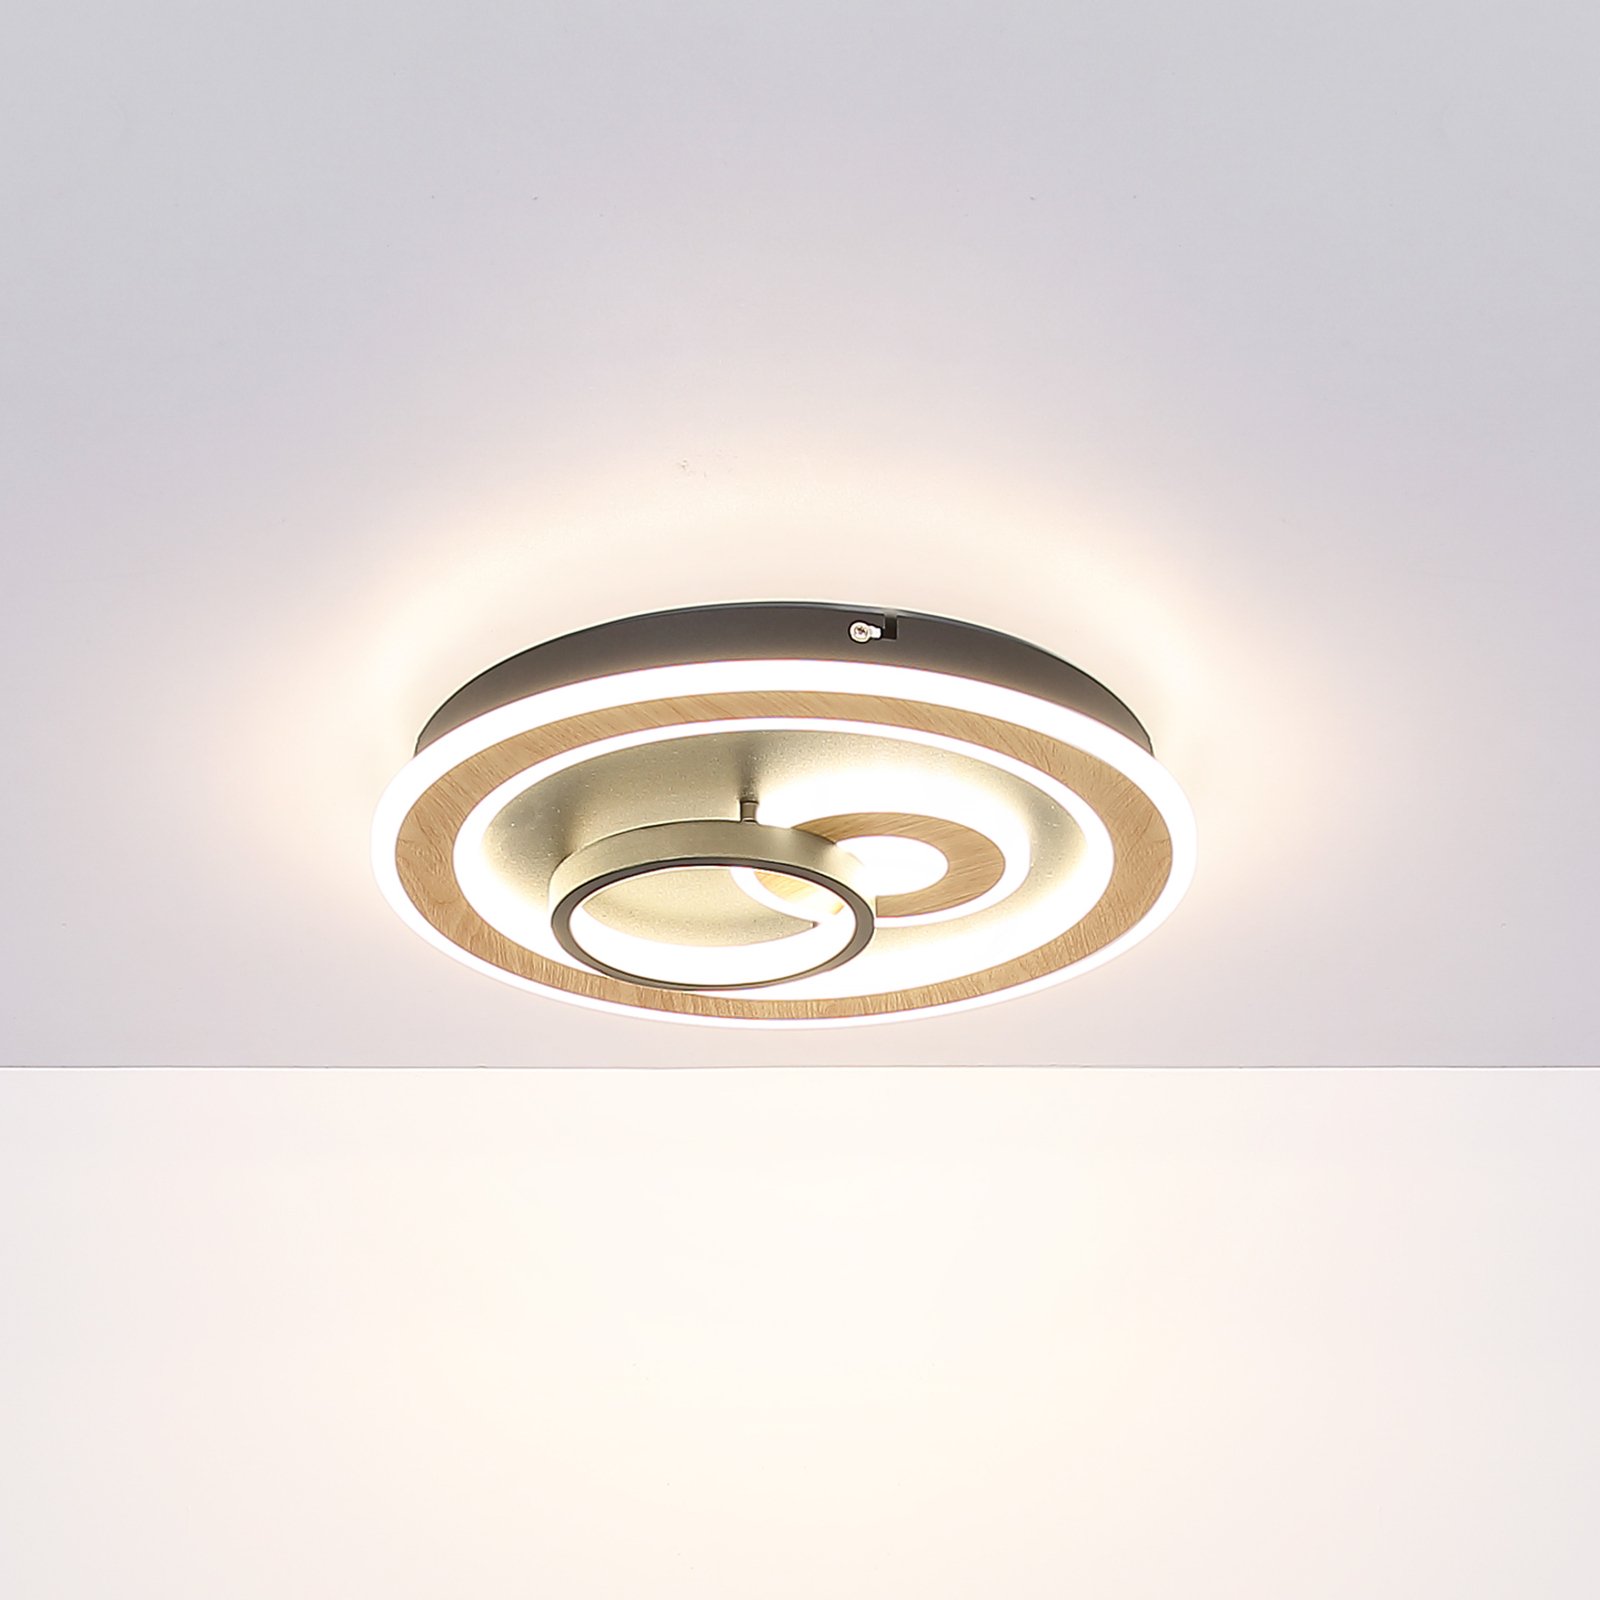 Smart LED ceiling lamp Chessy Ø 50 cm